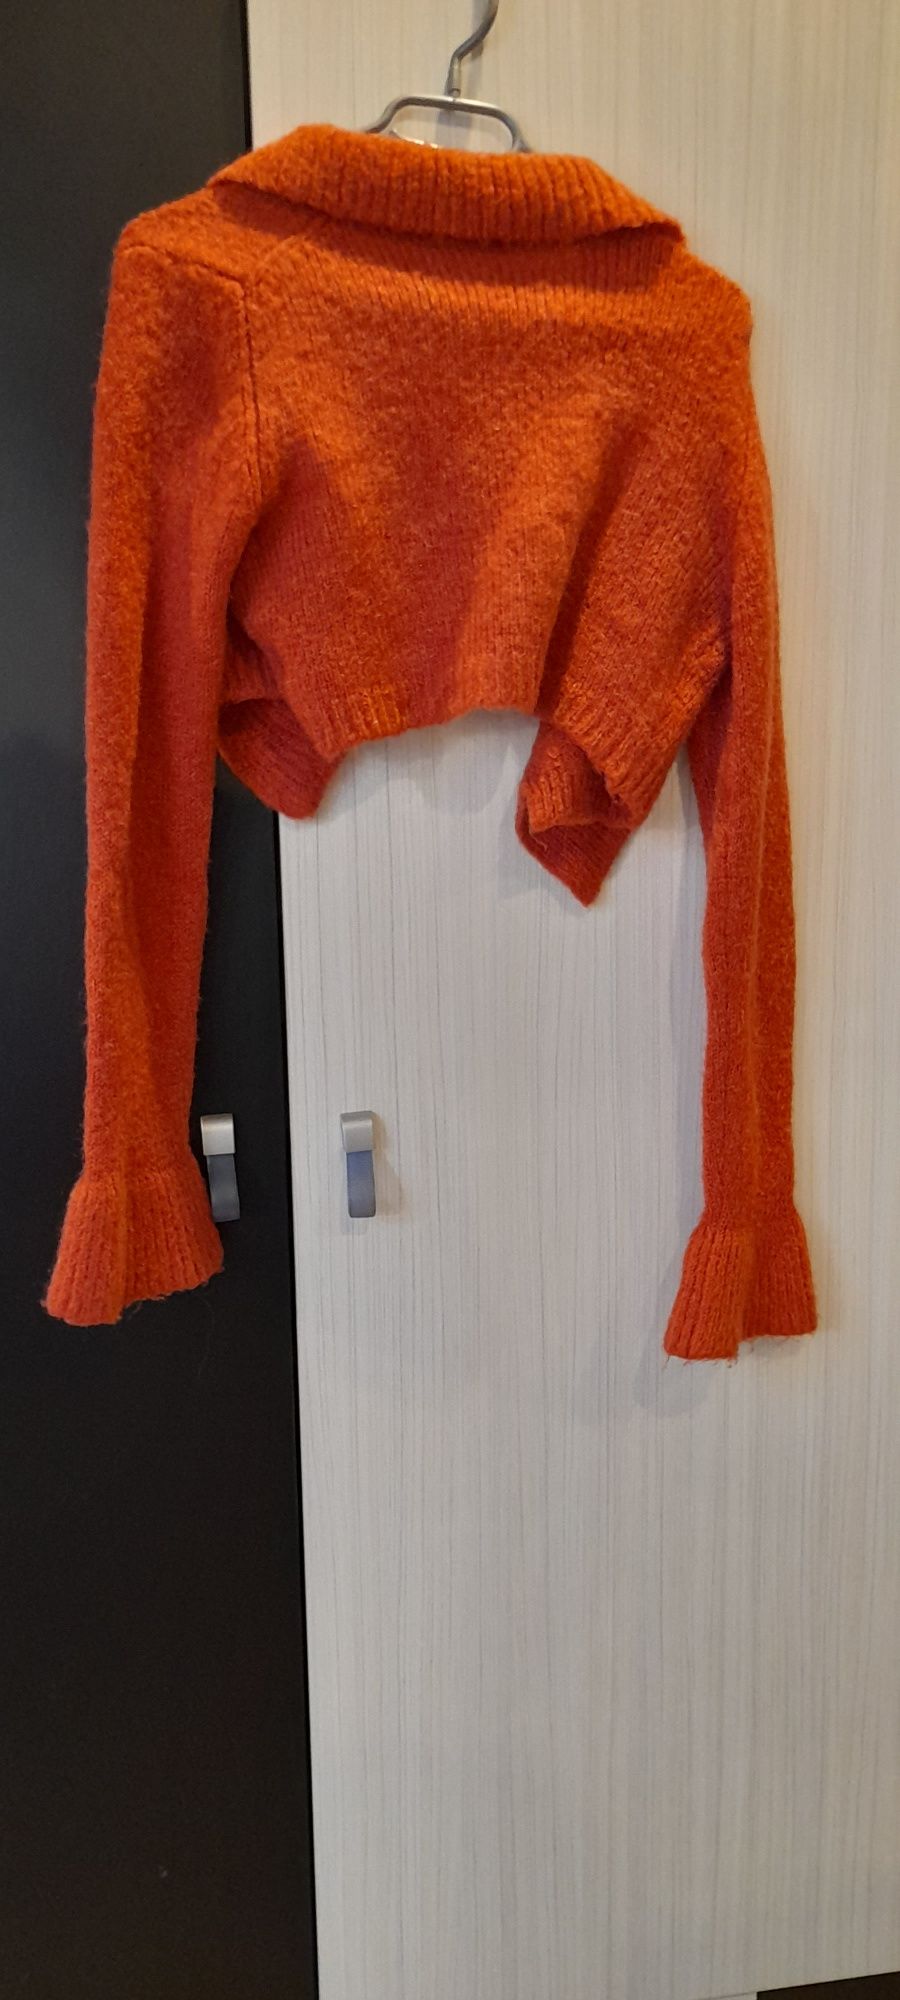 Sweter kobiecy bolerko damski pomarańczowy